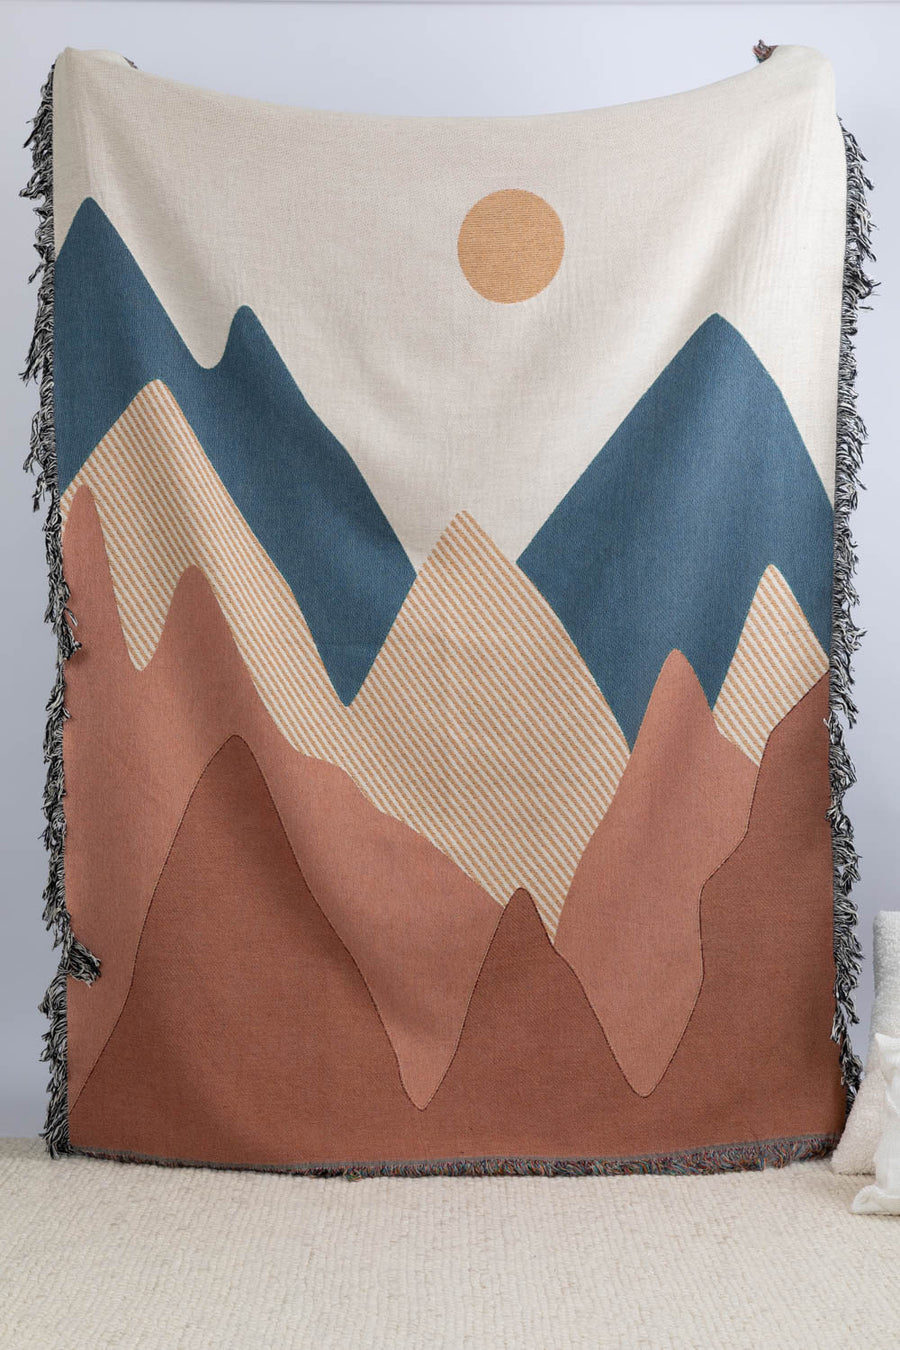 Boho Mountain Throw Blanket 60x80